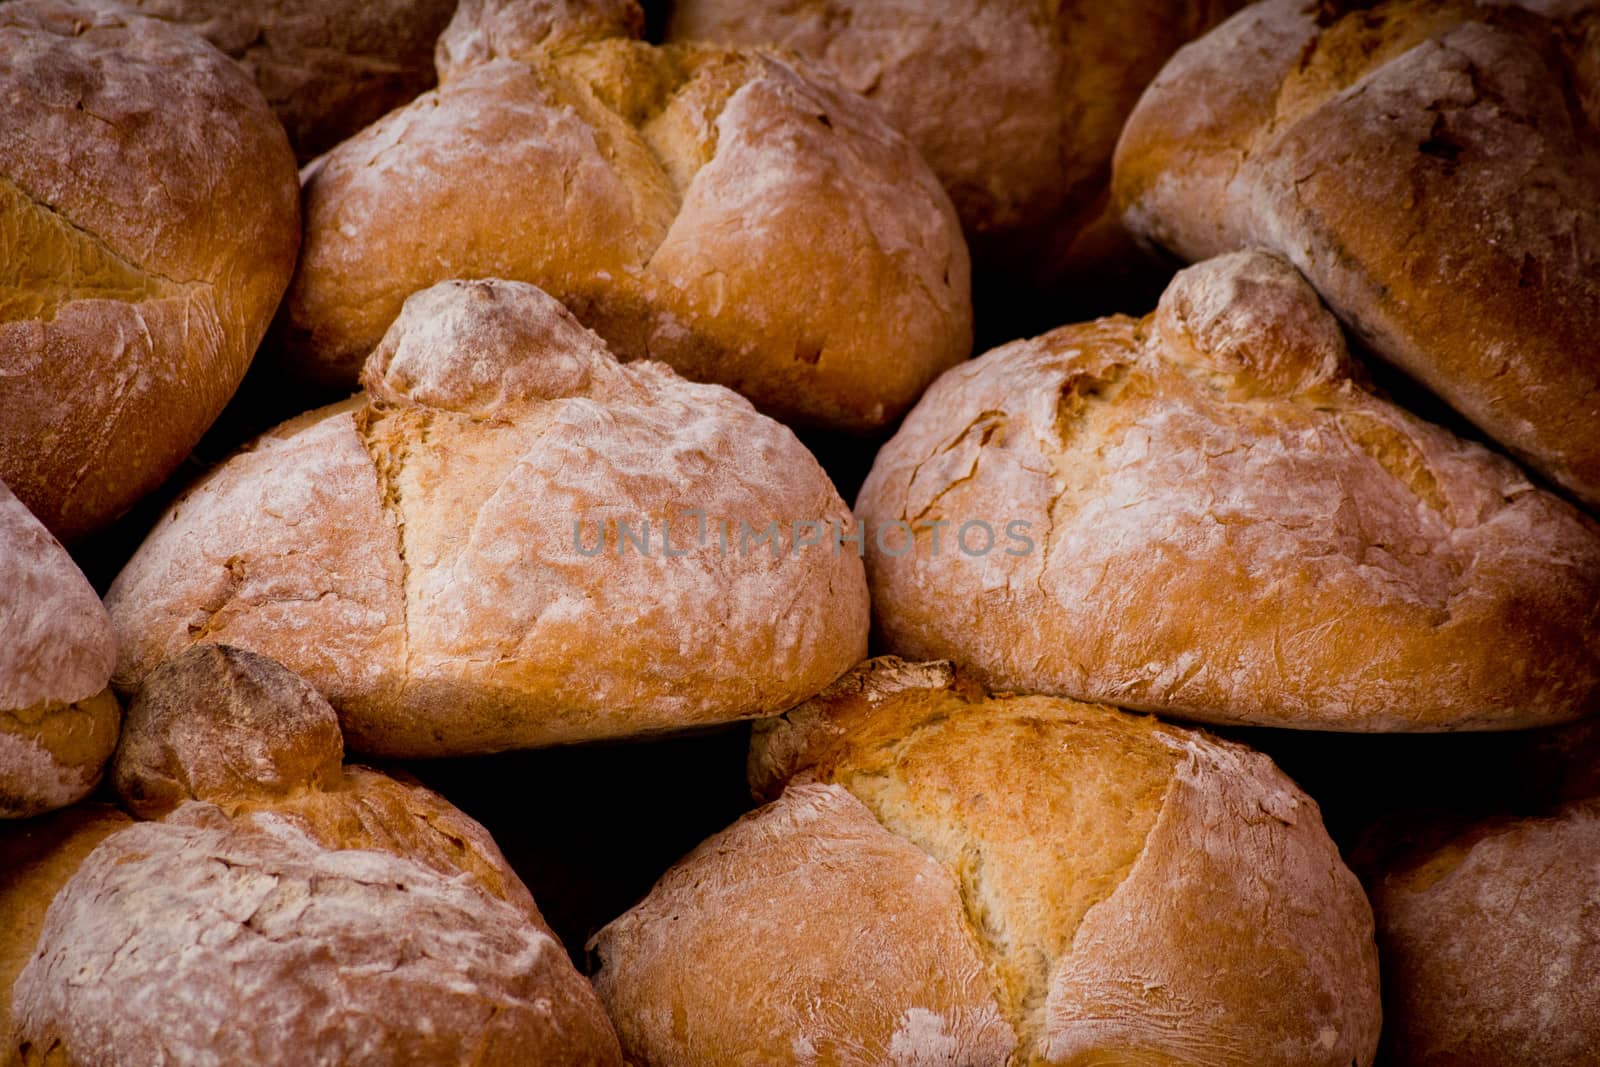 fresh bread in a market